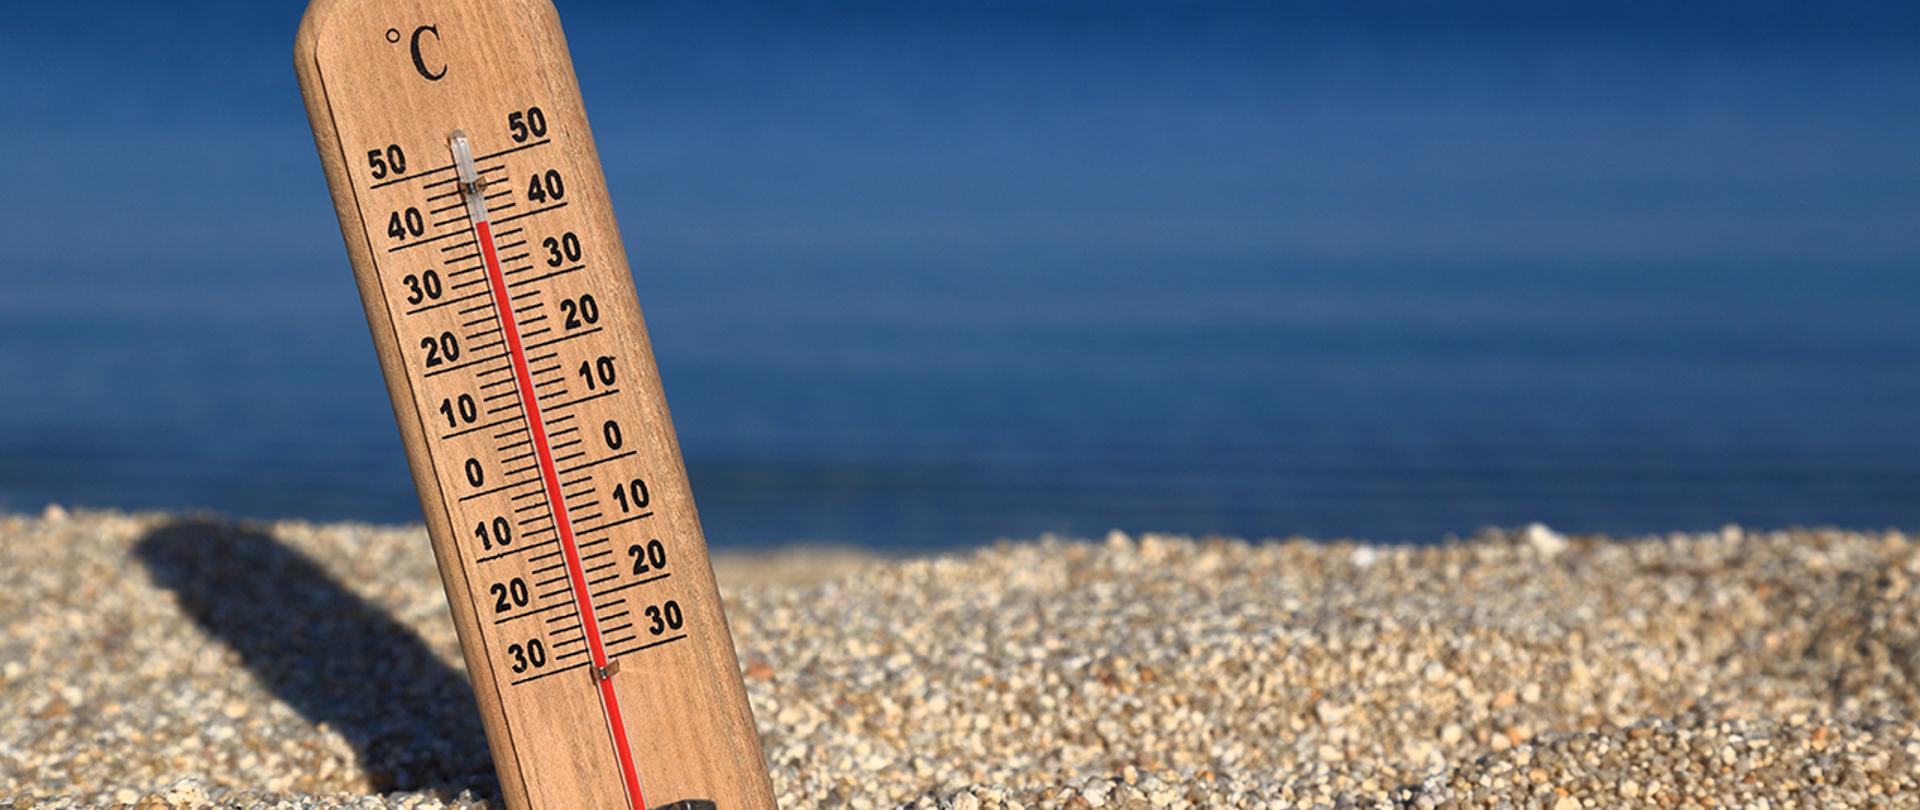 Termometr z wysoką temperaturą wbity w piasek na plaży.